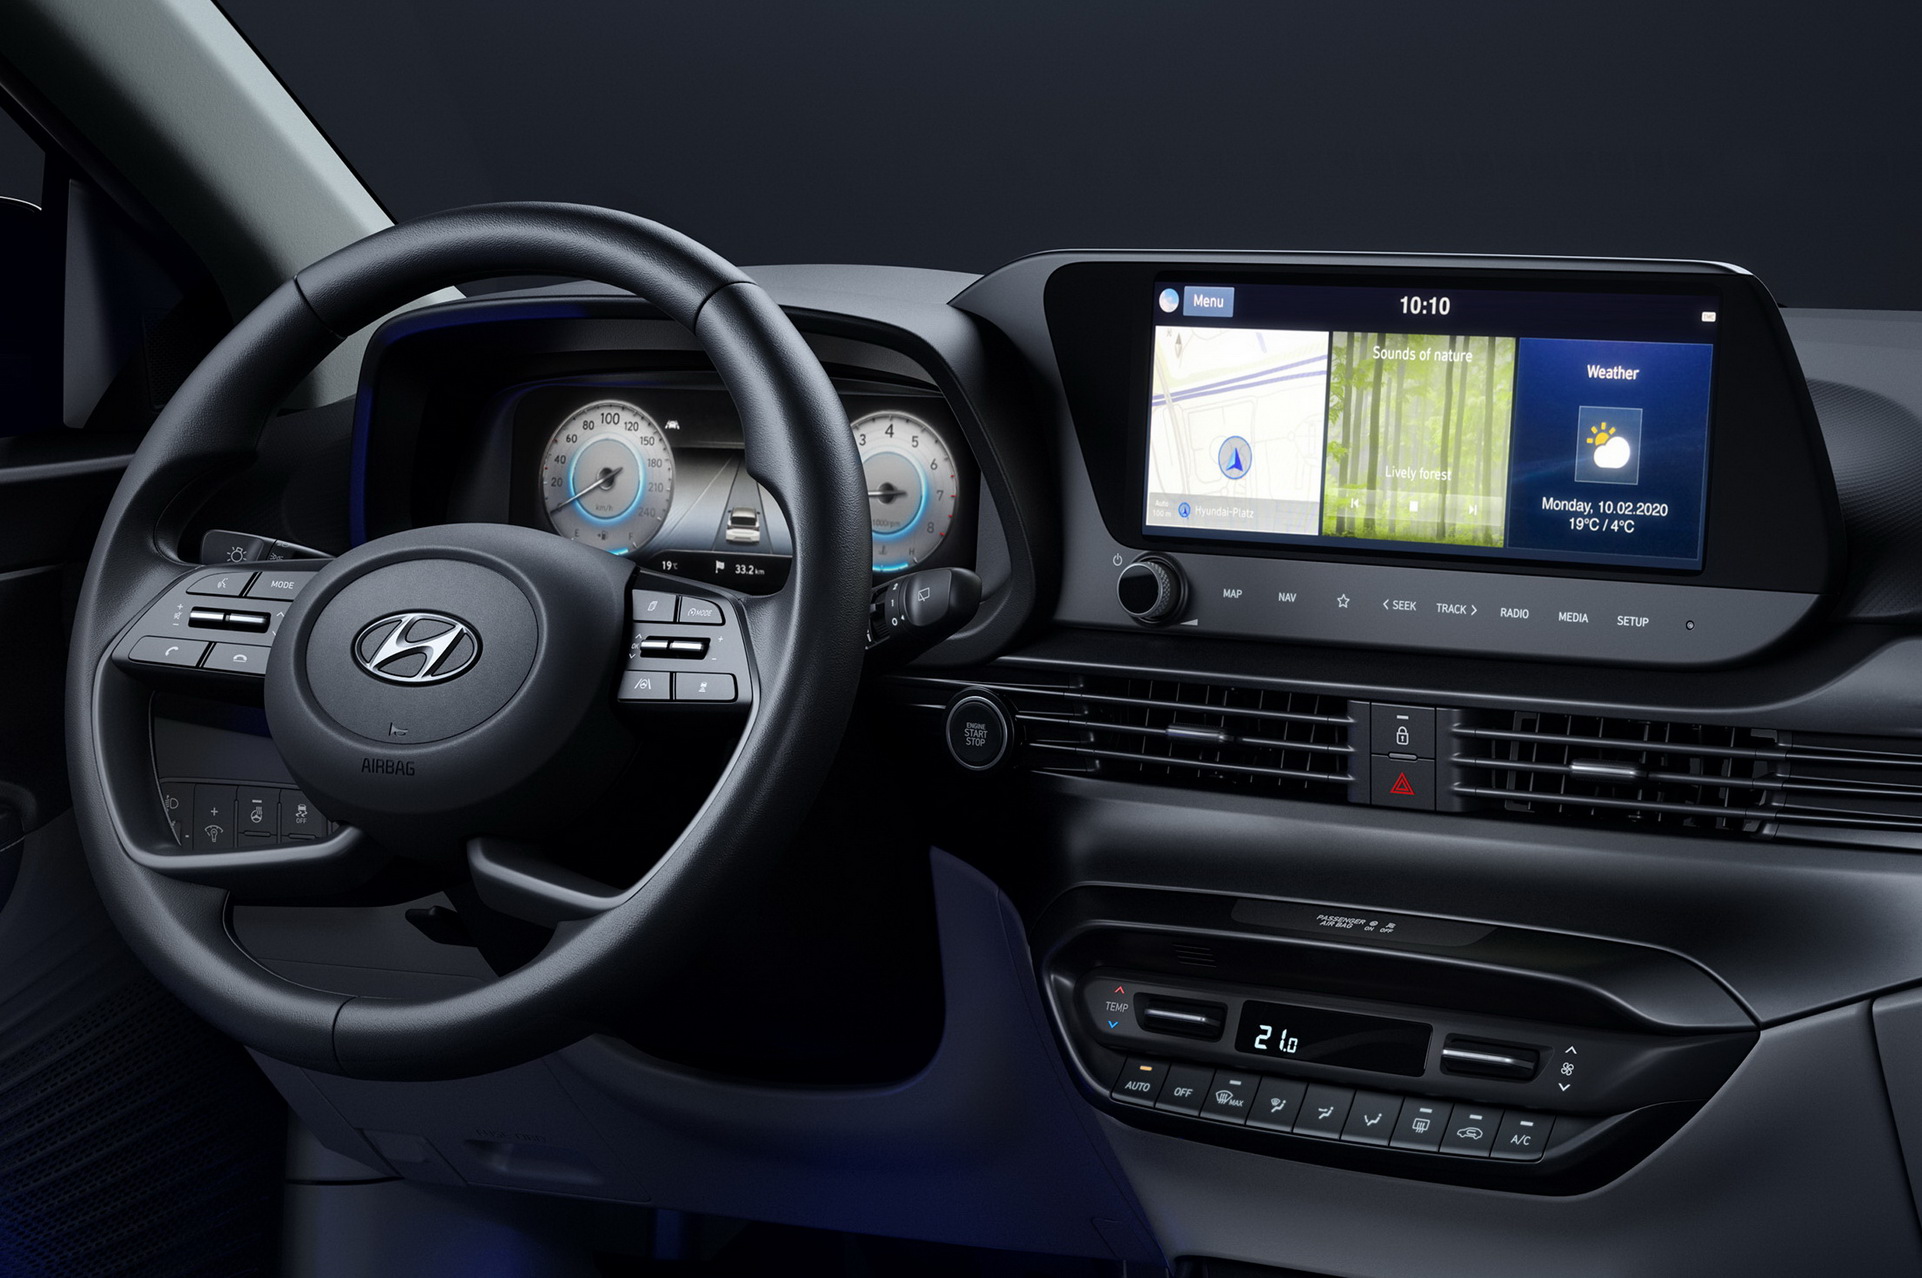 Tak Wygląda Nowy Hyundai I20 2020 | Motofilm.pl